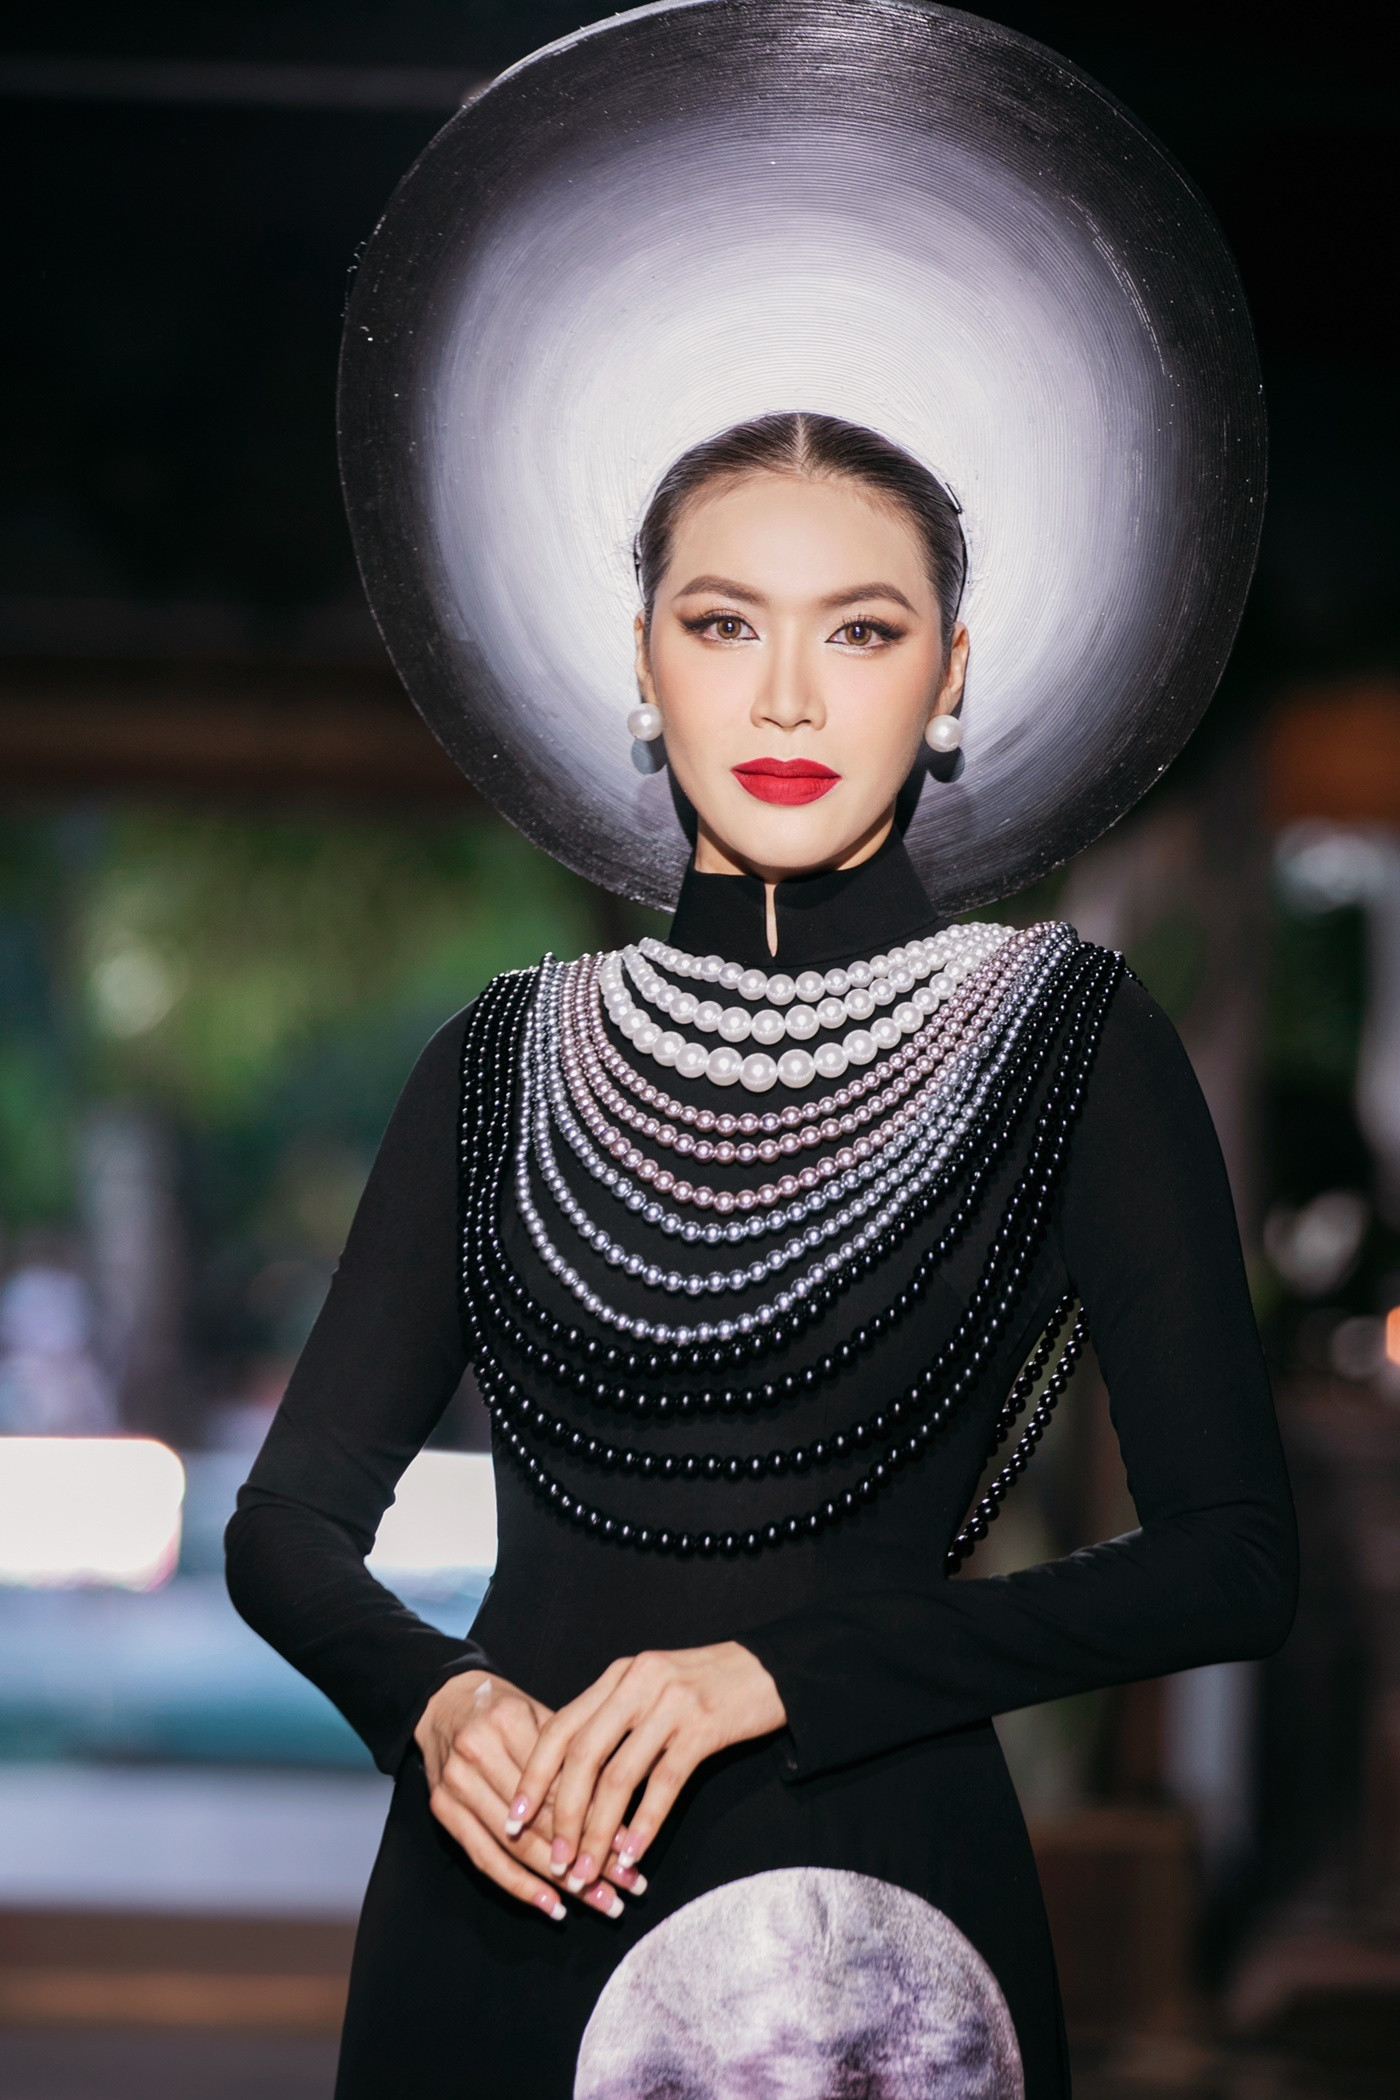 Đêm diễn mở màn với những bước catwalk của Hoa hậu - siêu mẫu Minh Tú. NTK Đinh Văn Thơ chọn cho Minh Tú một thiết kế với kĩ thuật cắt may tinh tế. Thêm vào đó, ý tưởng ánh trăng huyền ảo cũng tô đậm trên chiếc mấn của siêu mẫu.